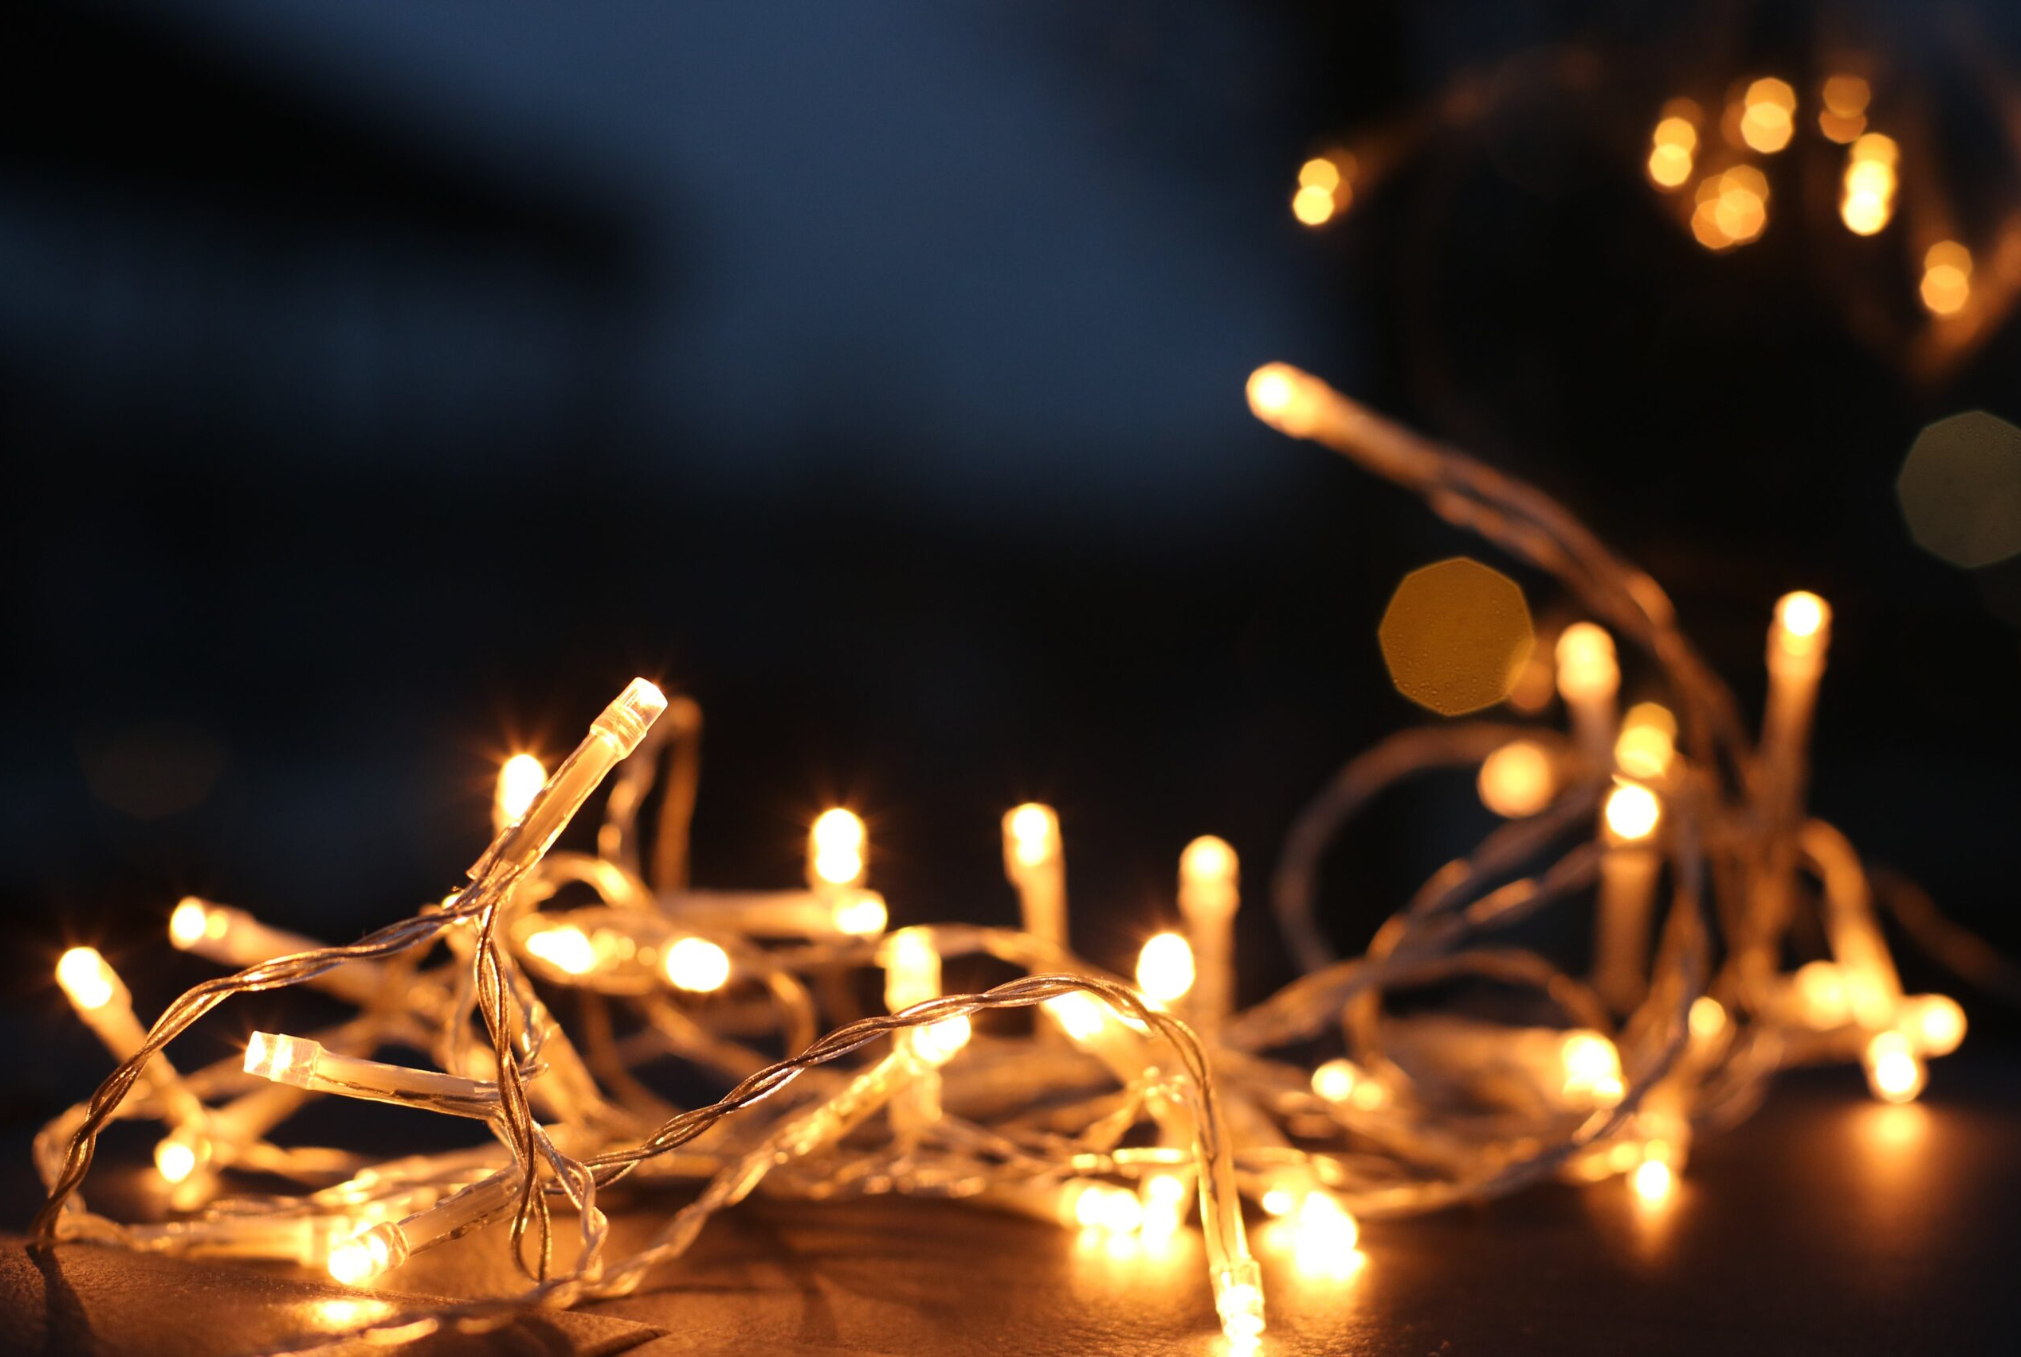 Χριστουγεννιάτικα λαμπάκια αρωματικά κεριά και τζάκι κρύβουν και κινδύνους: Πλήρης οδηγίες για να τα χρησιμοποιείτε με ασφάλεια